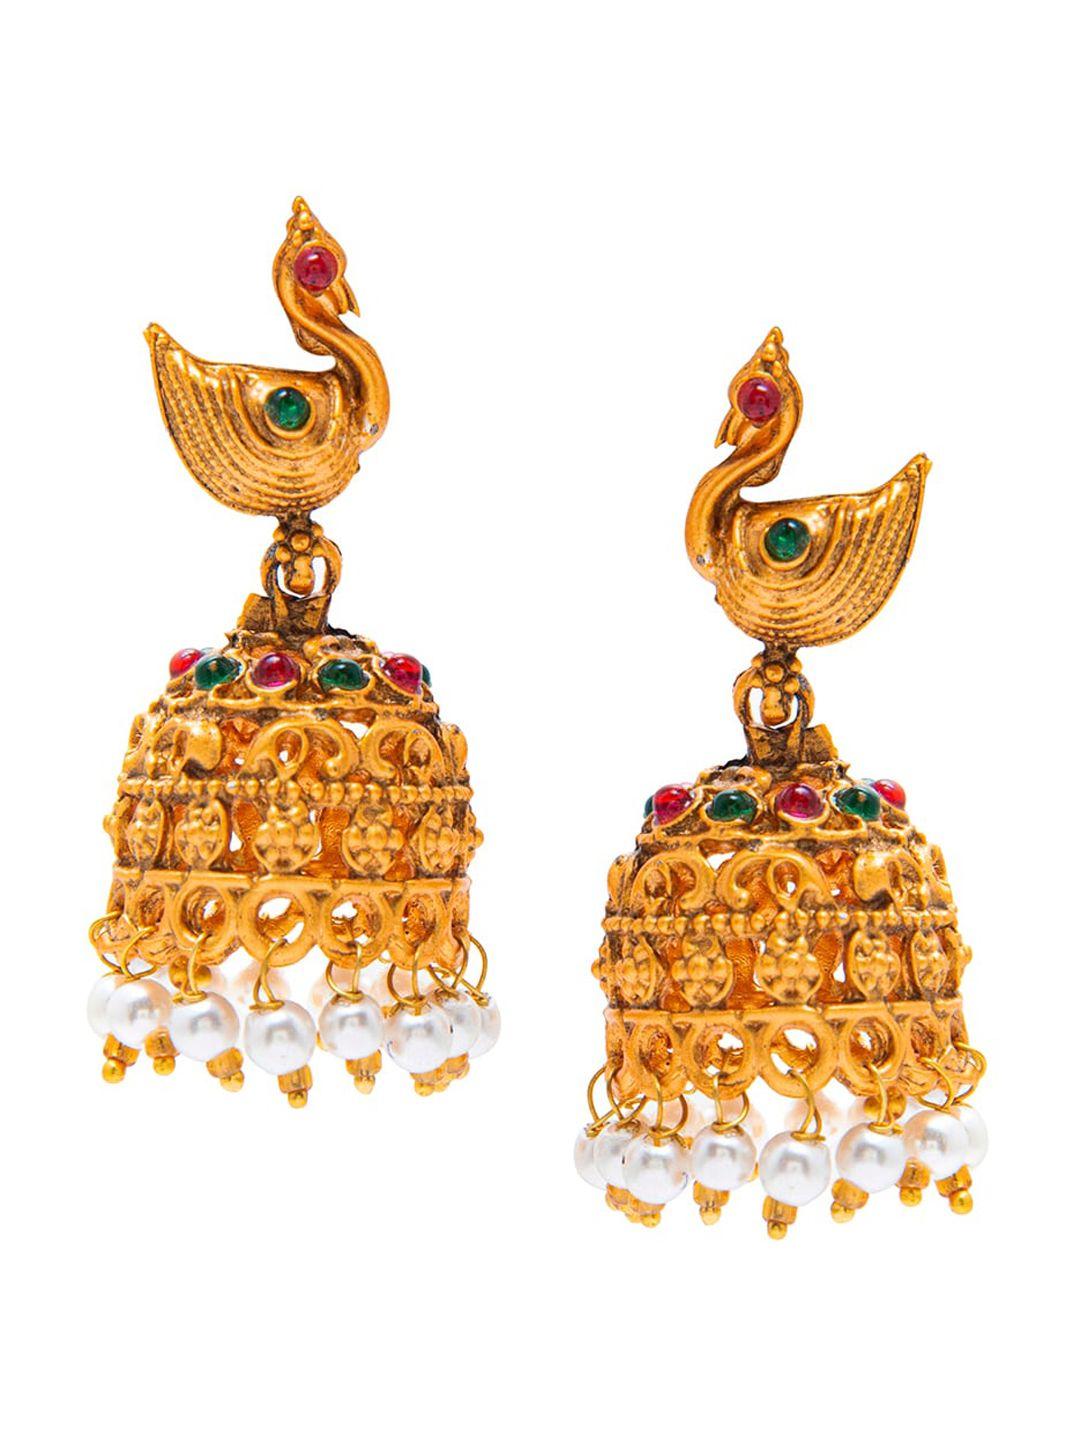 shining jewel - by shivansh women gold-toned peacock design jhumkas earrings